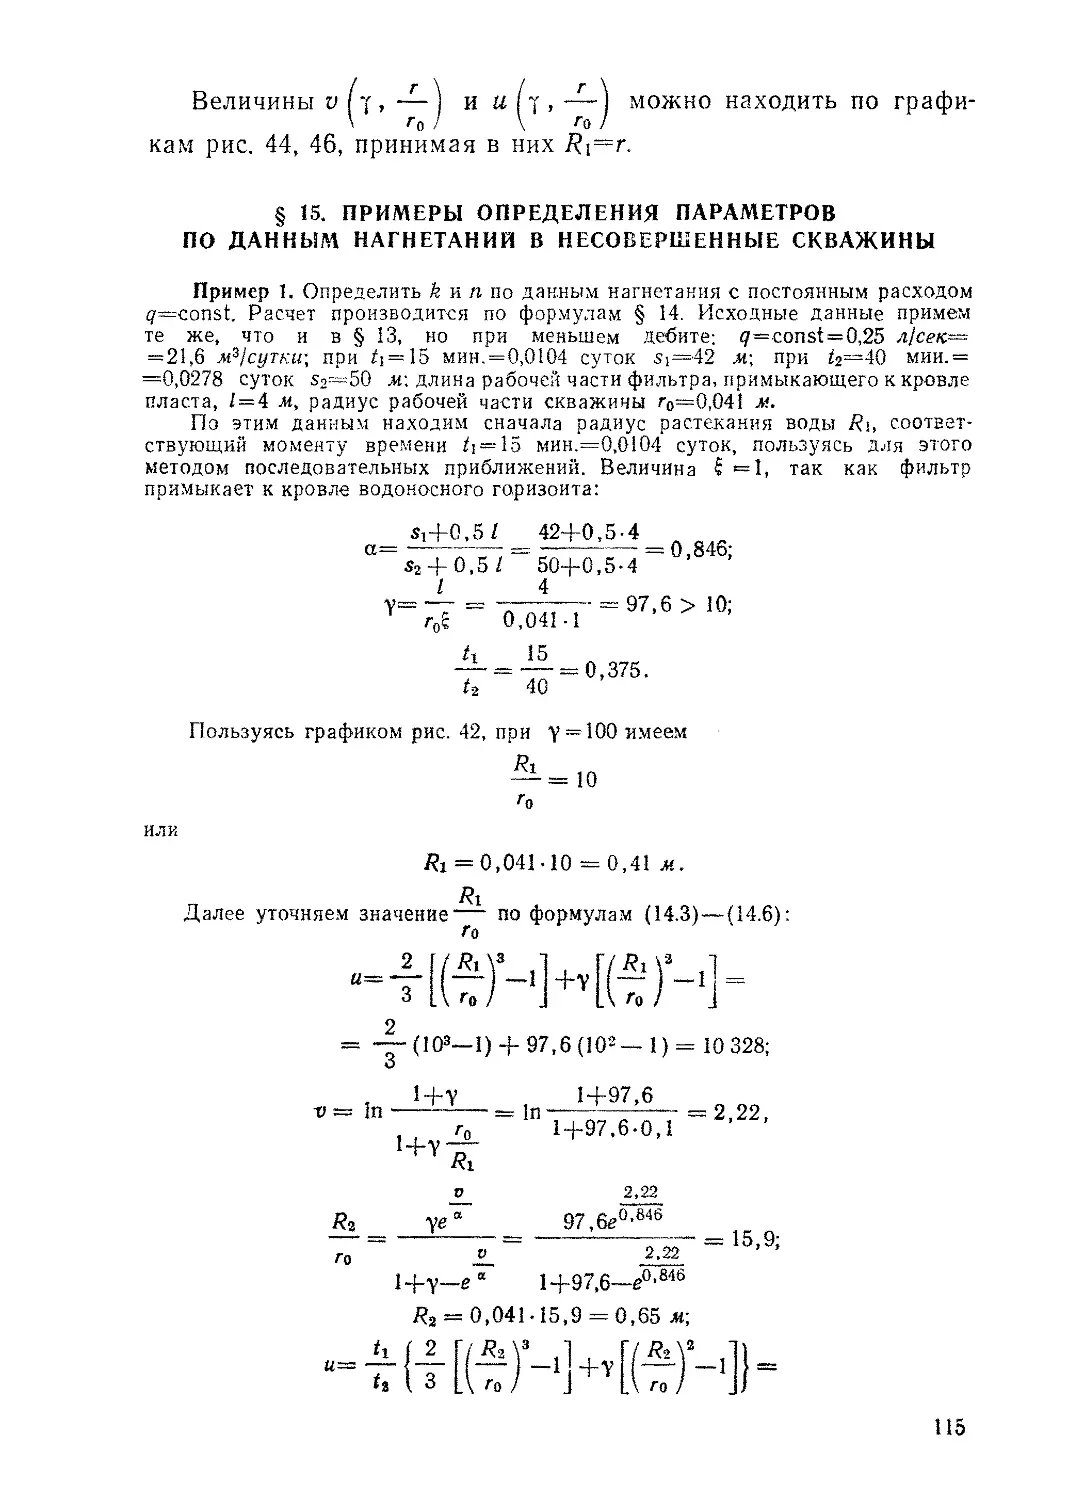 § 15. Примеры определения параметров по данным нагнетания в несовершенные скважины, 115